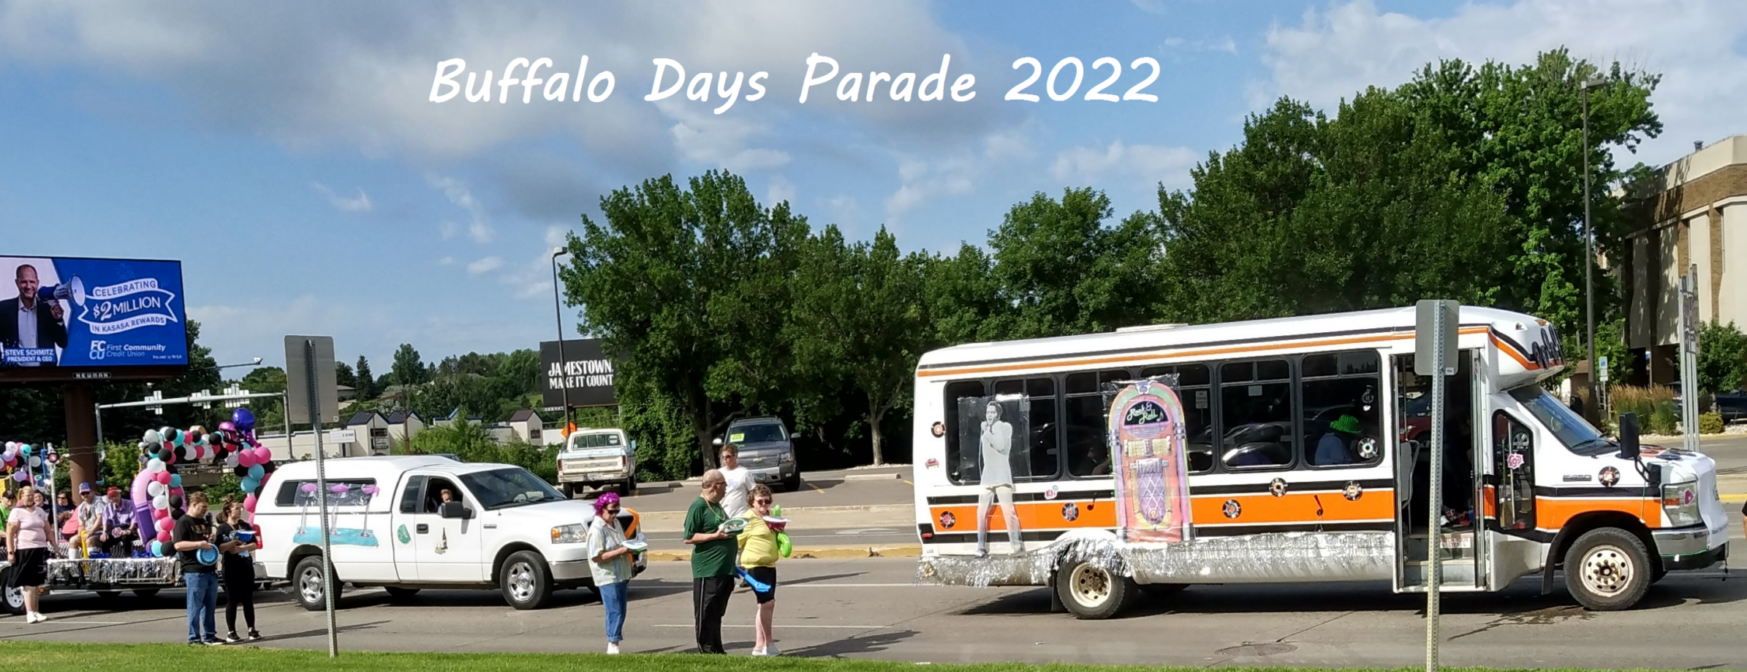 Buffalo Days Parade 2022